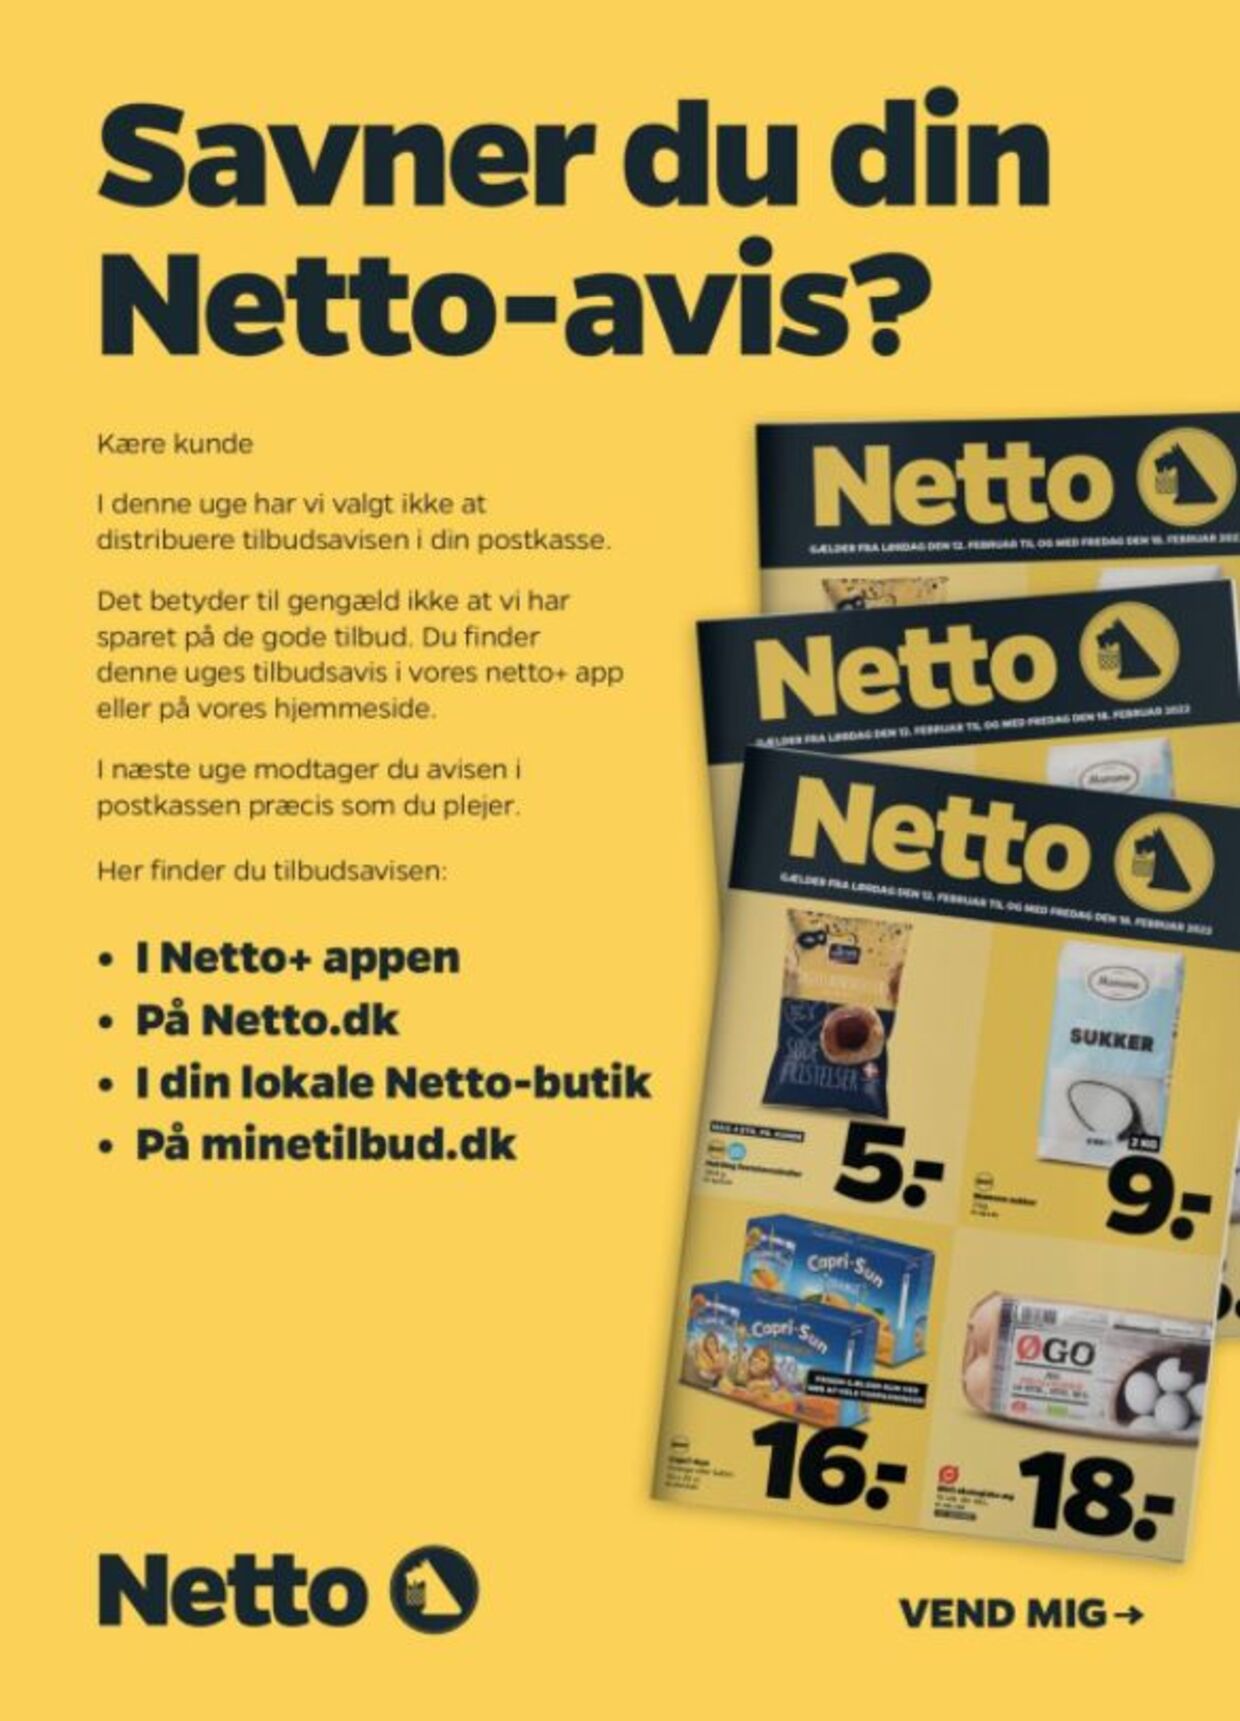 Netto dropper tilbudsaviser i næste uge BT Erhverv - www.bt.dk